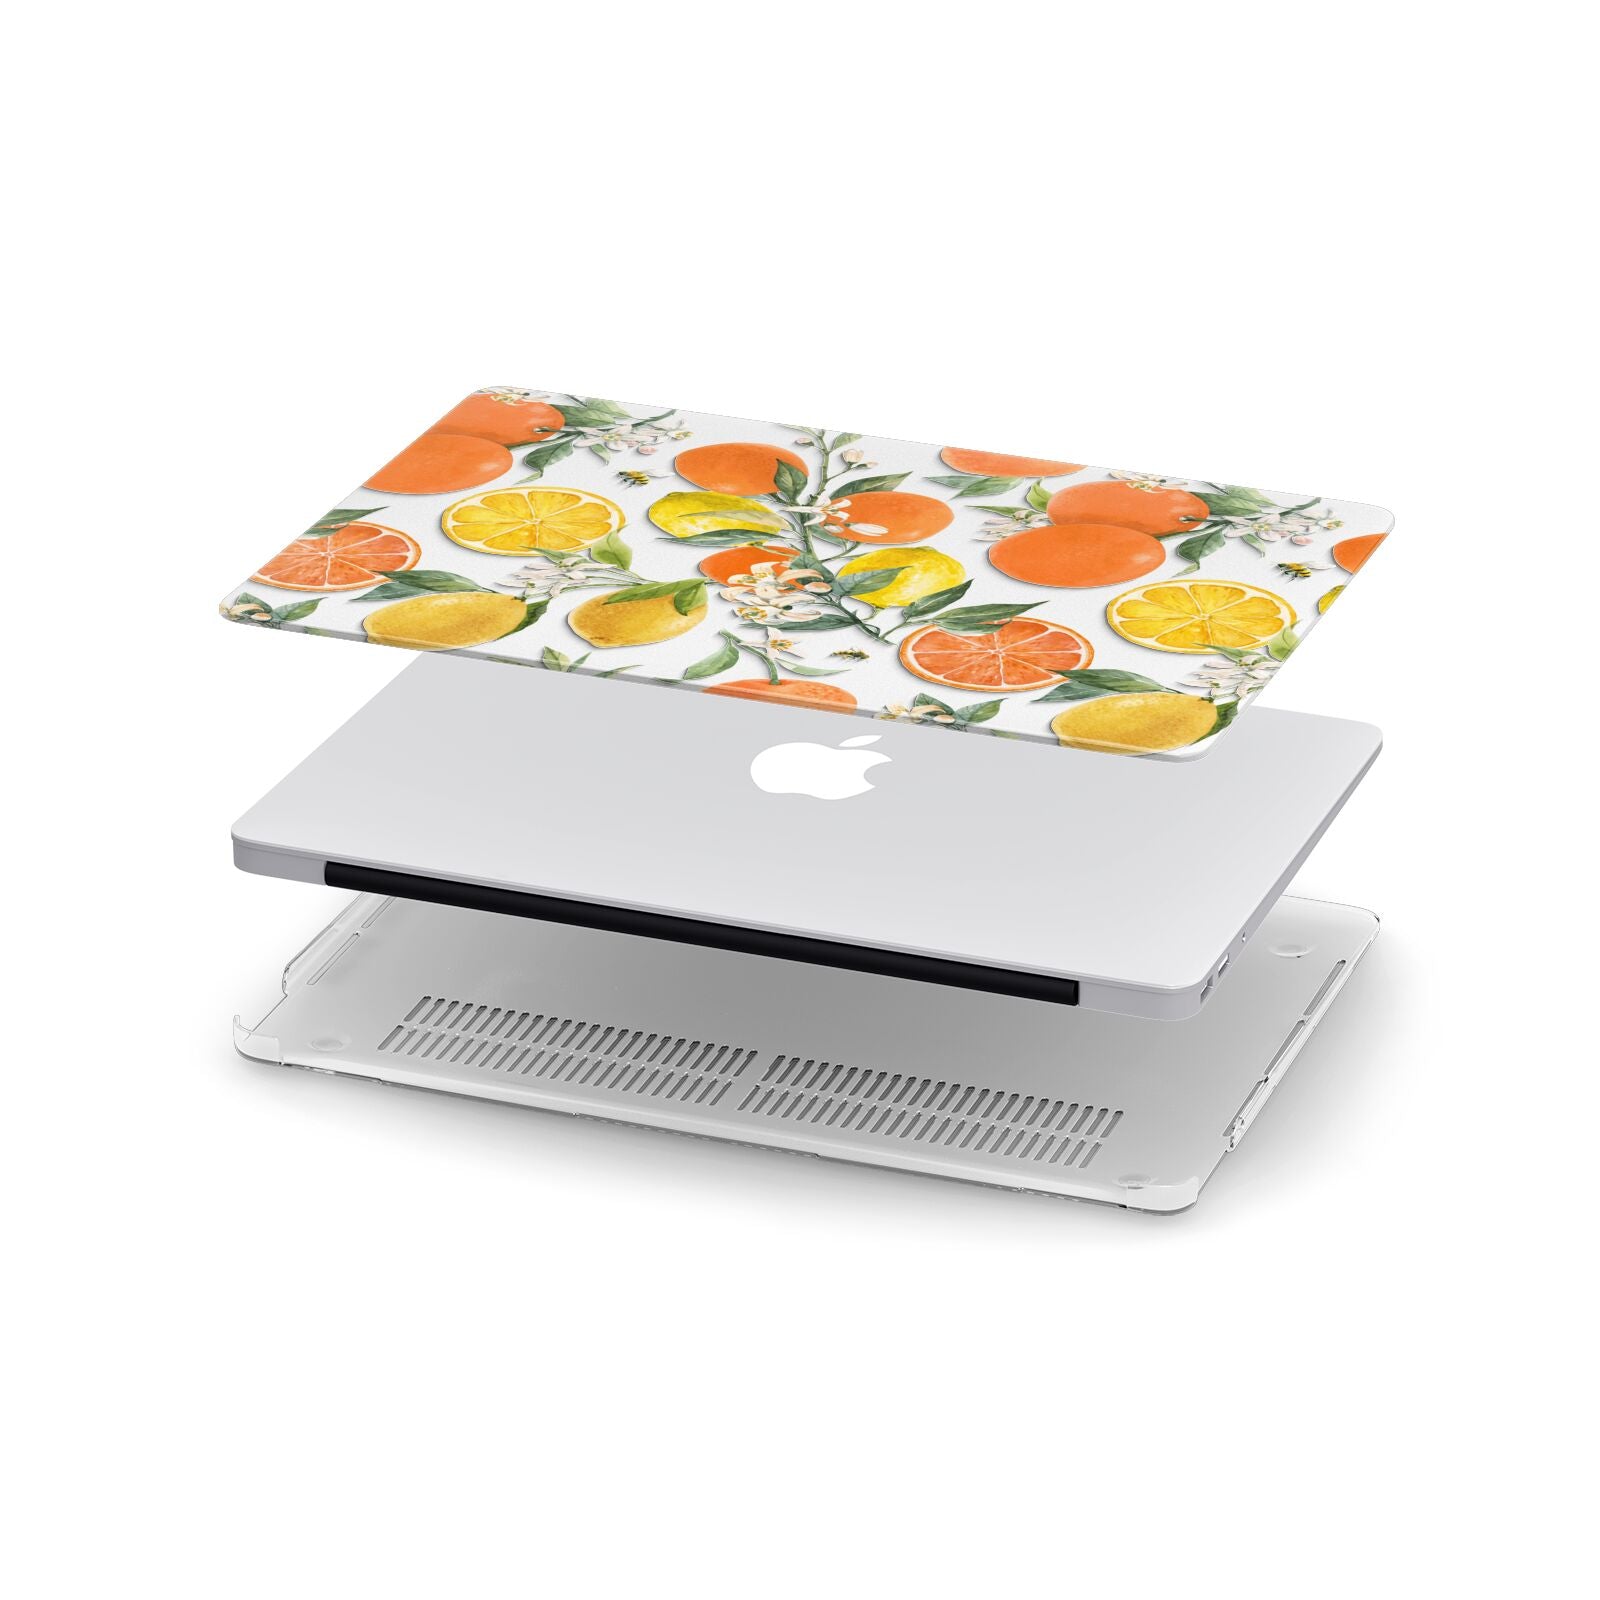 Lemons and Oranges Apple MacBook Case in Detail